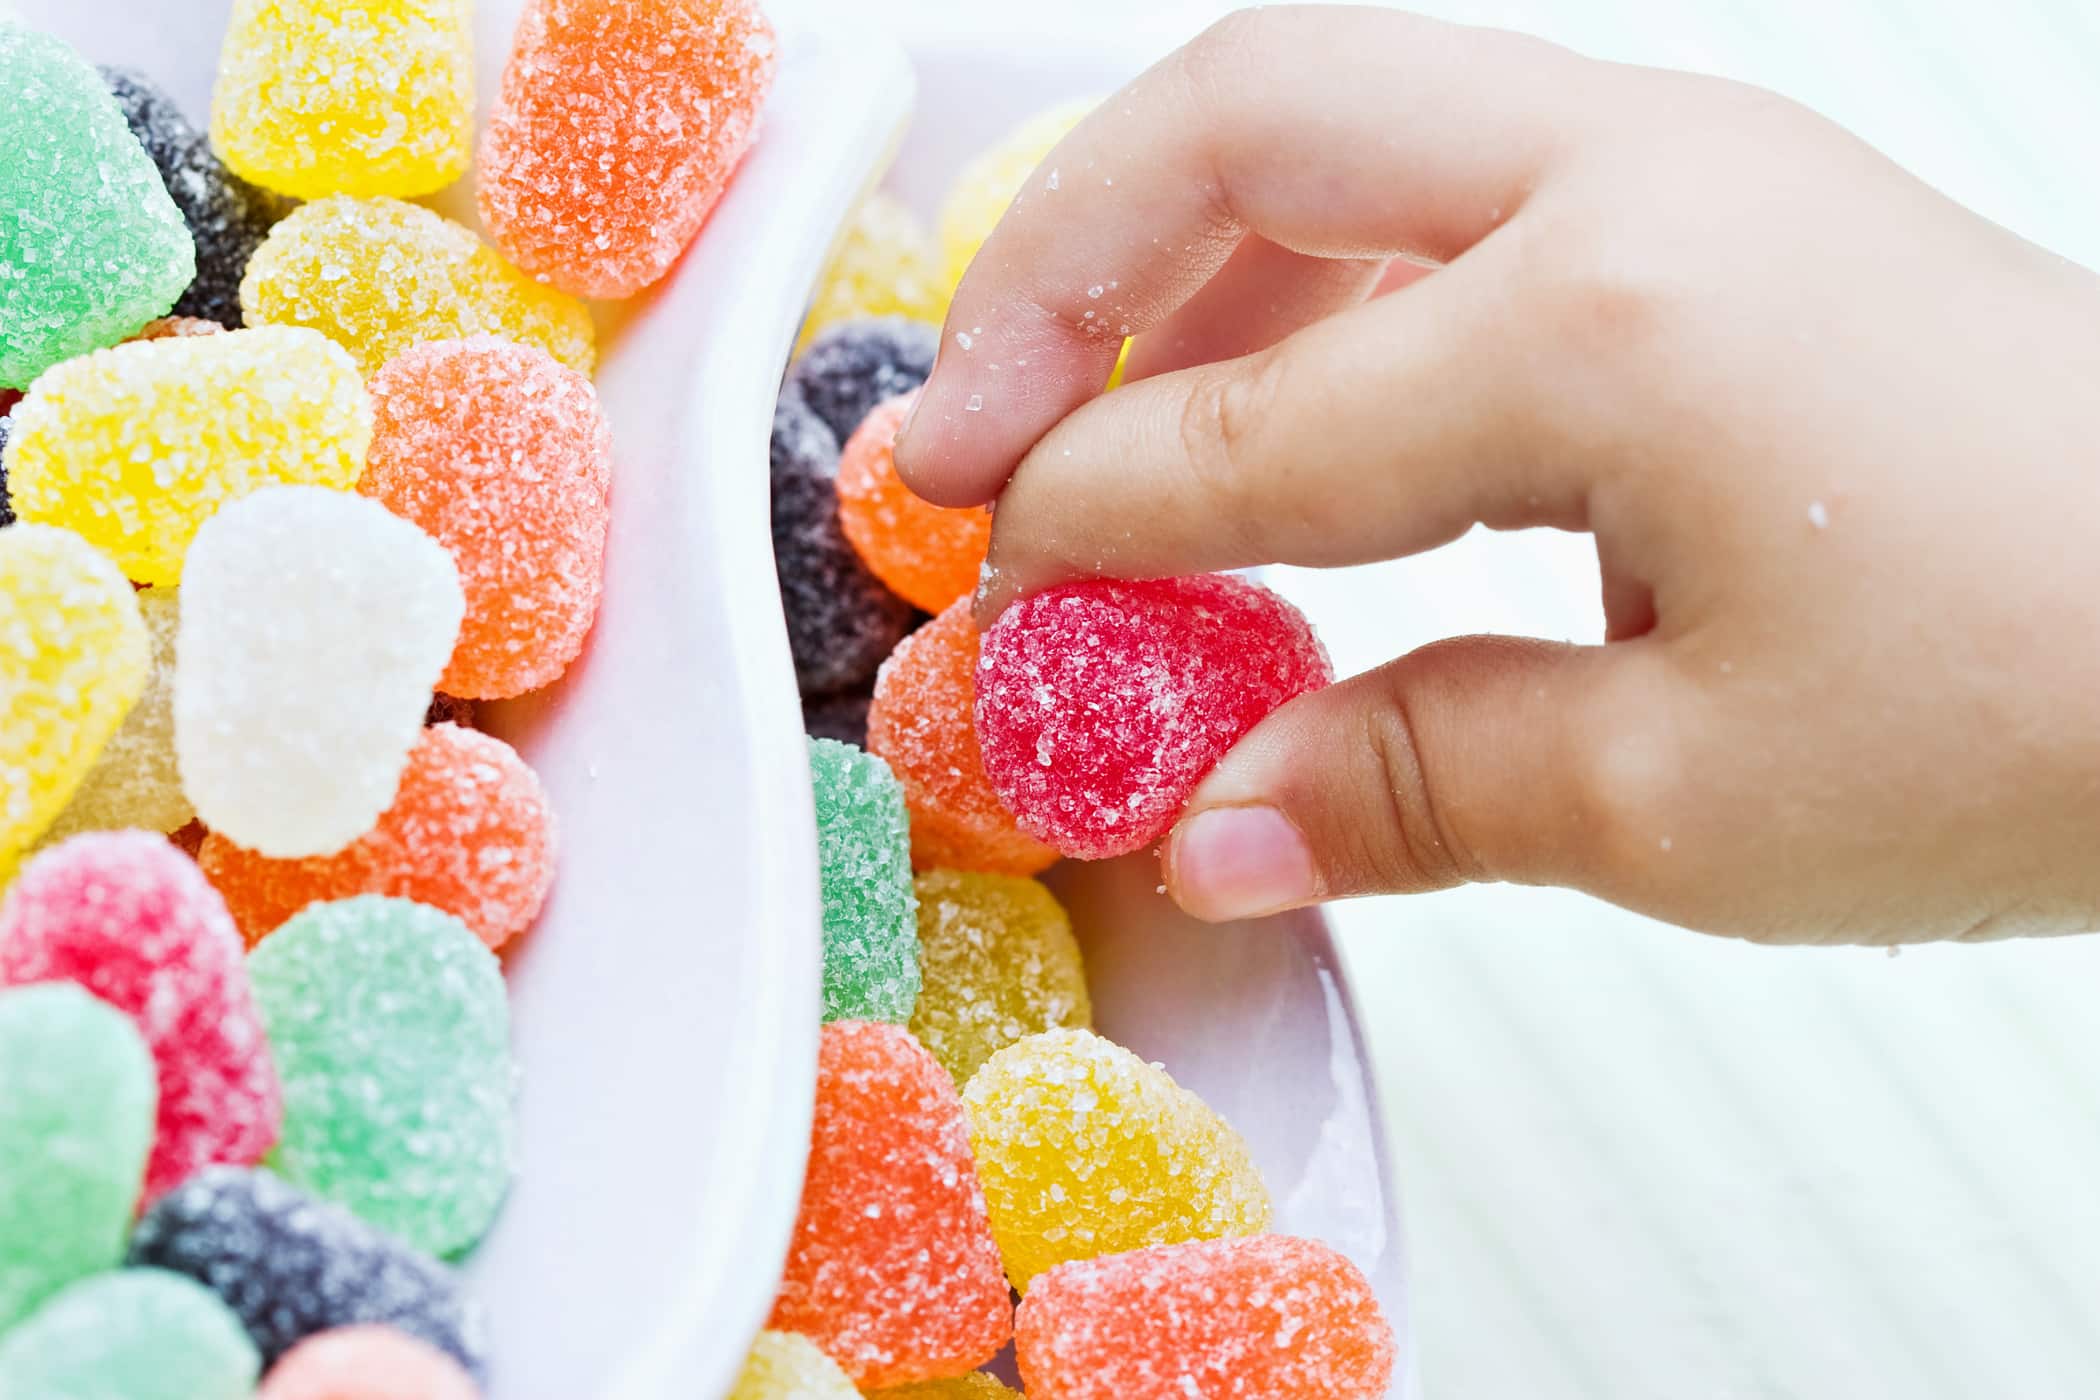 Socker är inte alltid dåligt för barns tillväxt och utveckling, så länge föräldrarna vet gränsen